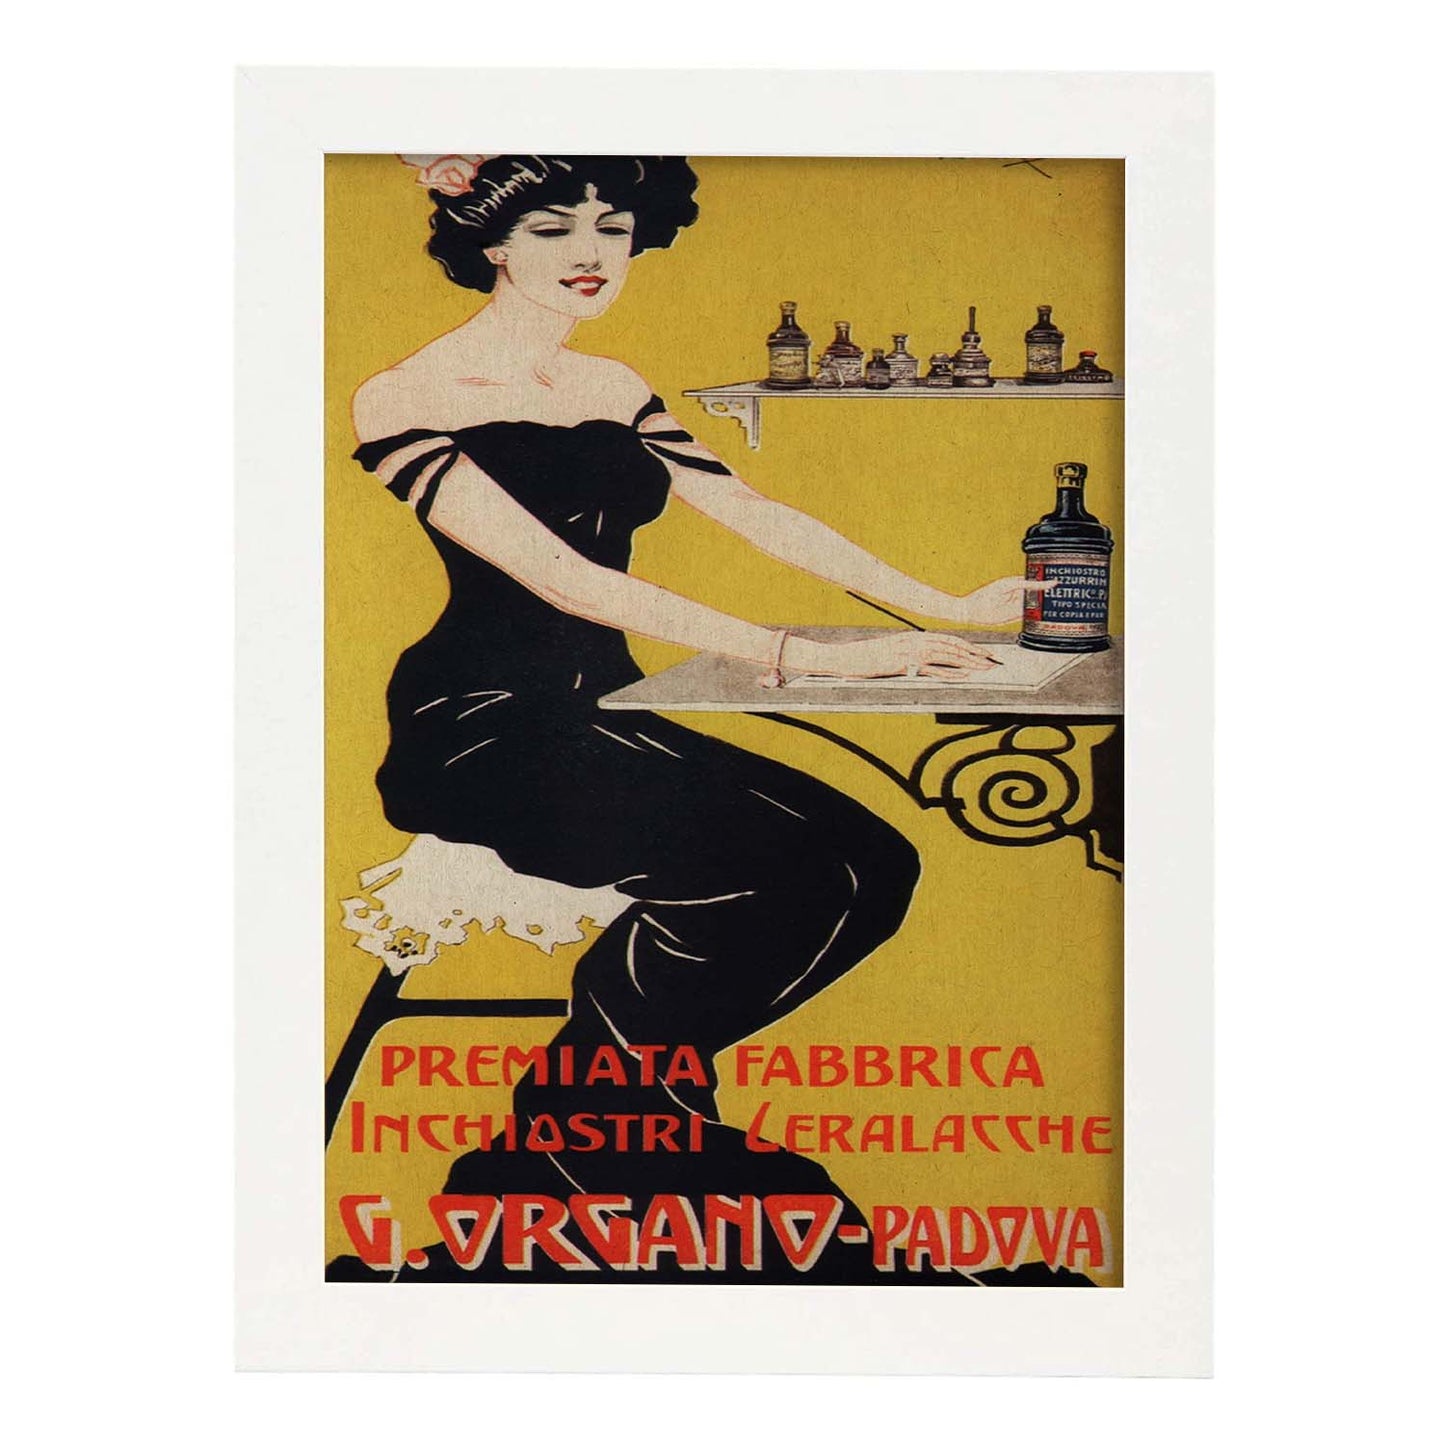 Poster vintage. Anuncio vintage italiano de G. Organo - Padova.-Artwork-Nacnic-A3-Marco Blanco-Nacnic Estudio SL